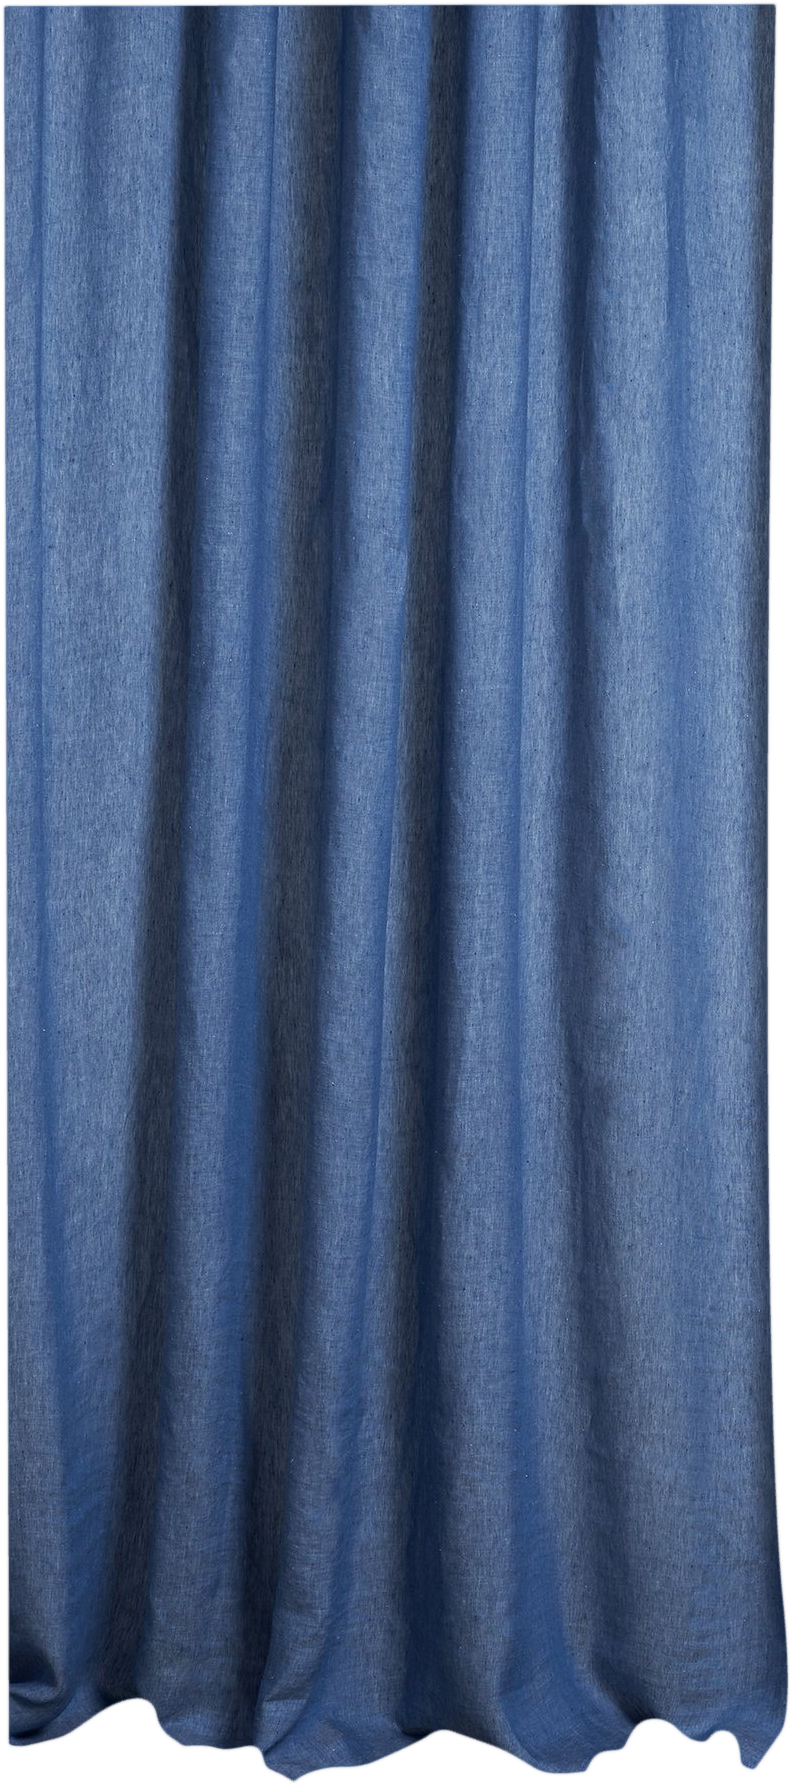 Two Tone Vorhang Stonewashed in Blau präsentiert im Onlineshop von KAQTU Design AG. Vorhang ist von ZigZagZurich